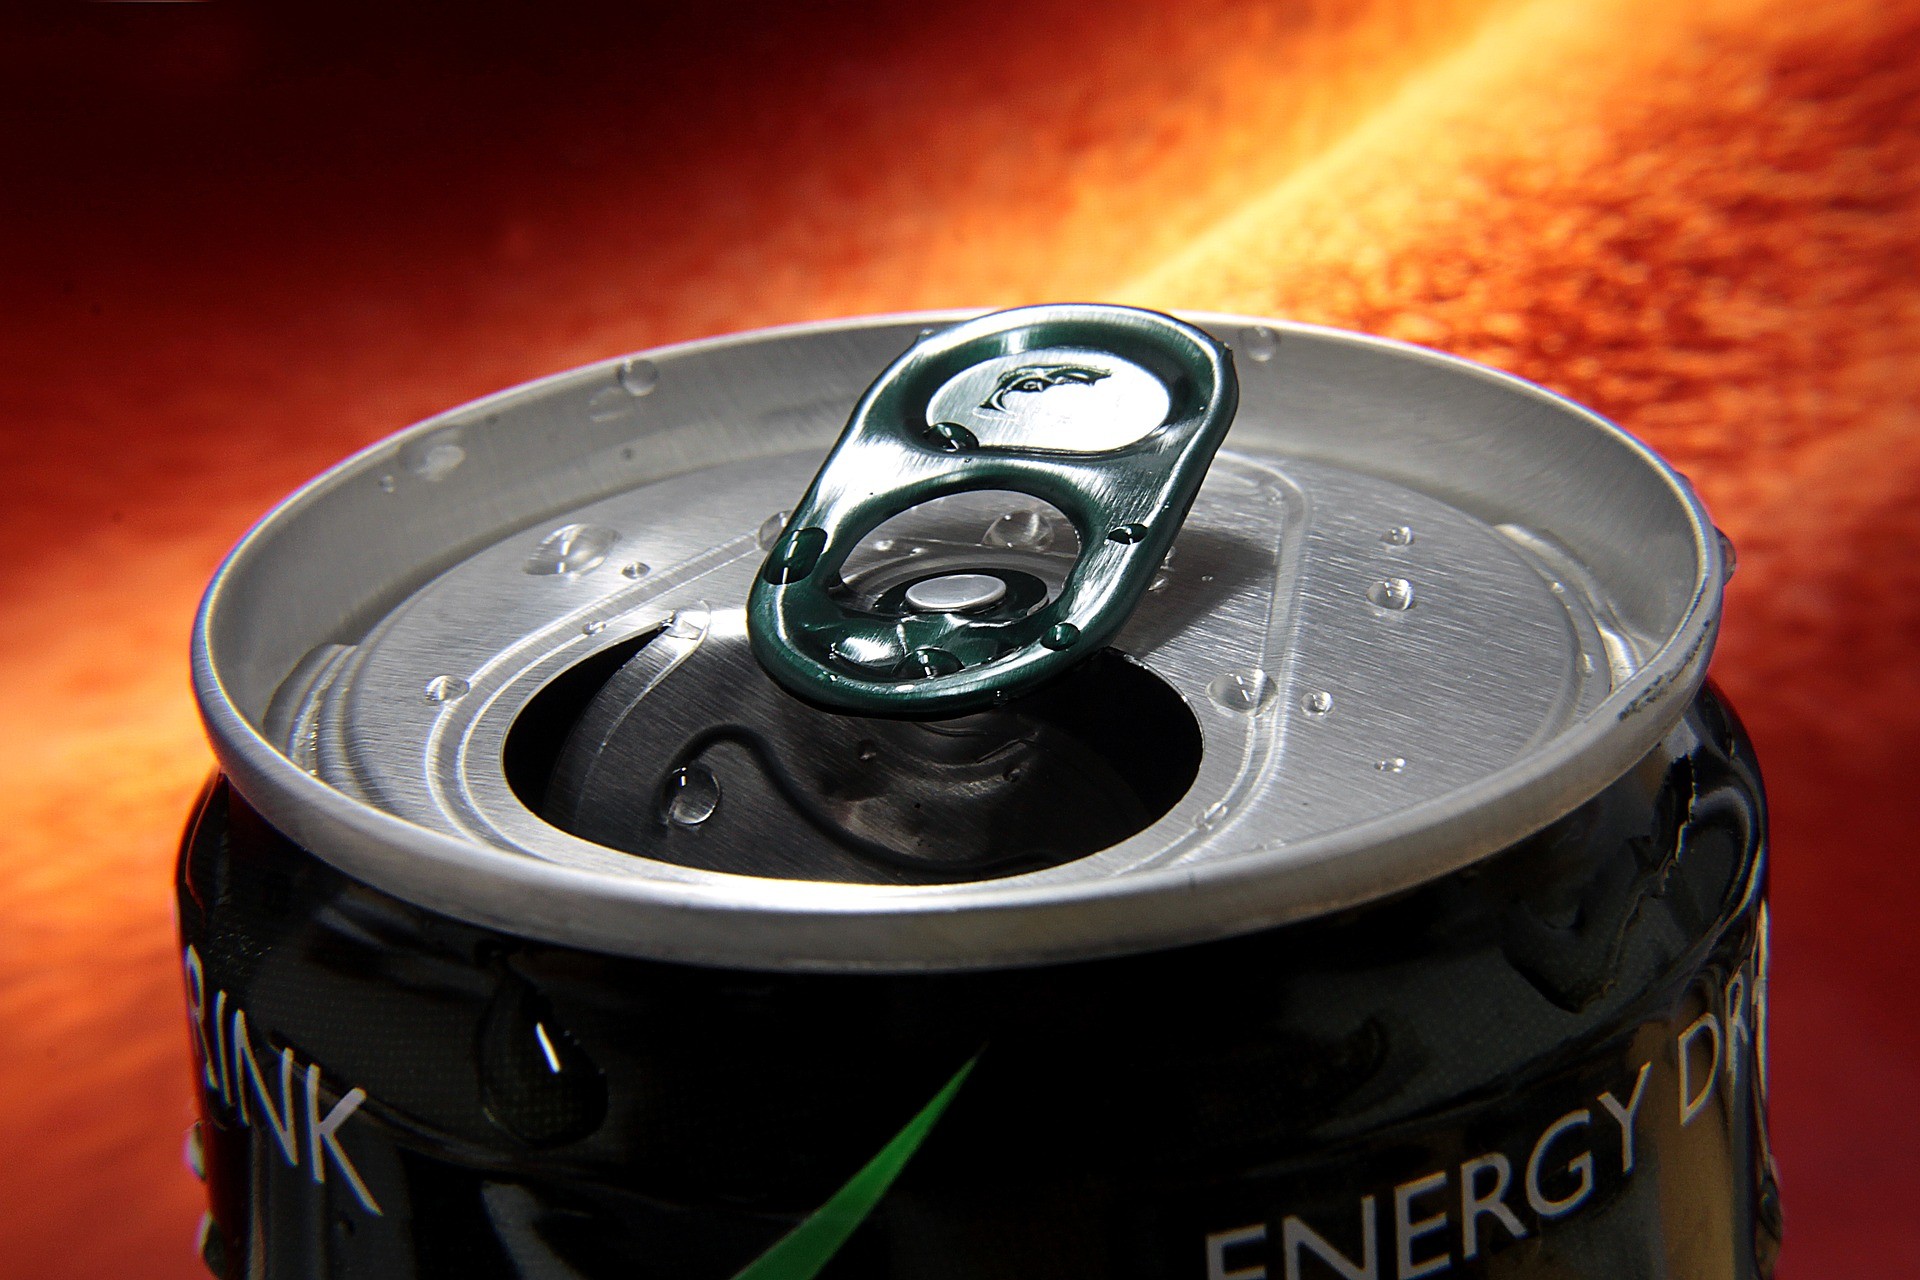 Energéticos: veja se funcionam mesmo e quais os riscos de misturar com álcool